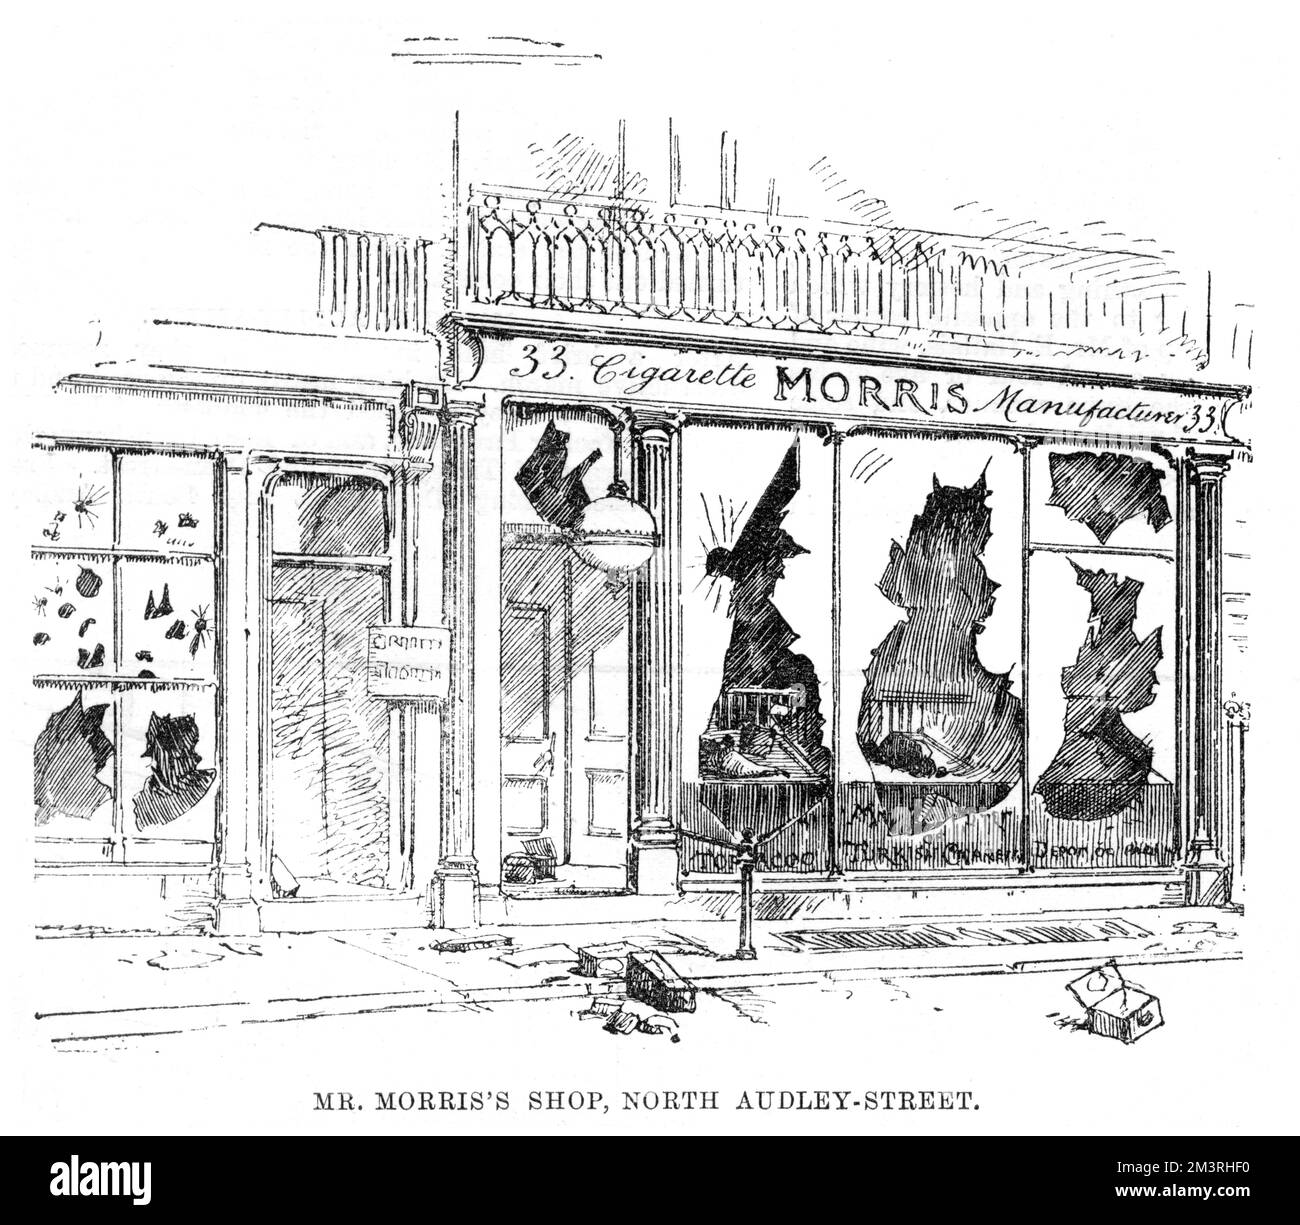 Les dommages causés par les émeutiers au magasin de cigarettes de M. Morris, sur la rue North Audley, lors des émeutes de 1886 dans le West End. Lors d’une réunion en plein air d’ouvriers et d’artisans du quai East End au chômage à Trafalgar Square, les gens ont été enflammés à la suite de discours incendiaires, et se sont révoltés, causant des ravages dans les rues à la mode du West End. Date: 1886 Banque D'Images